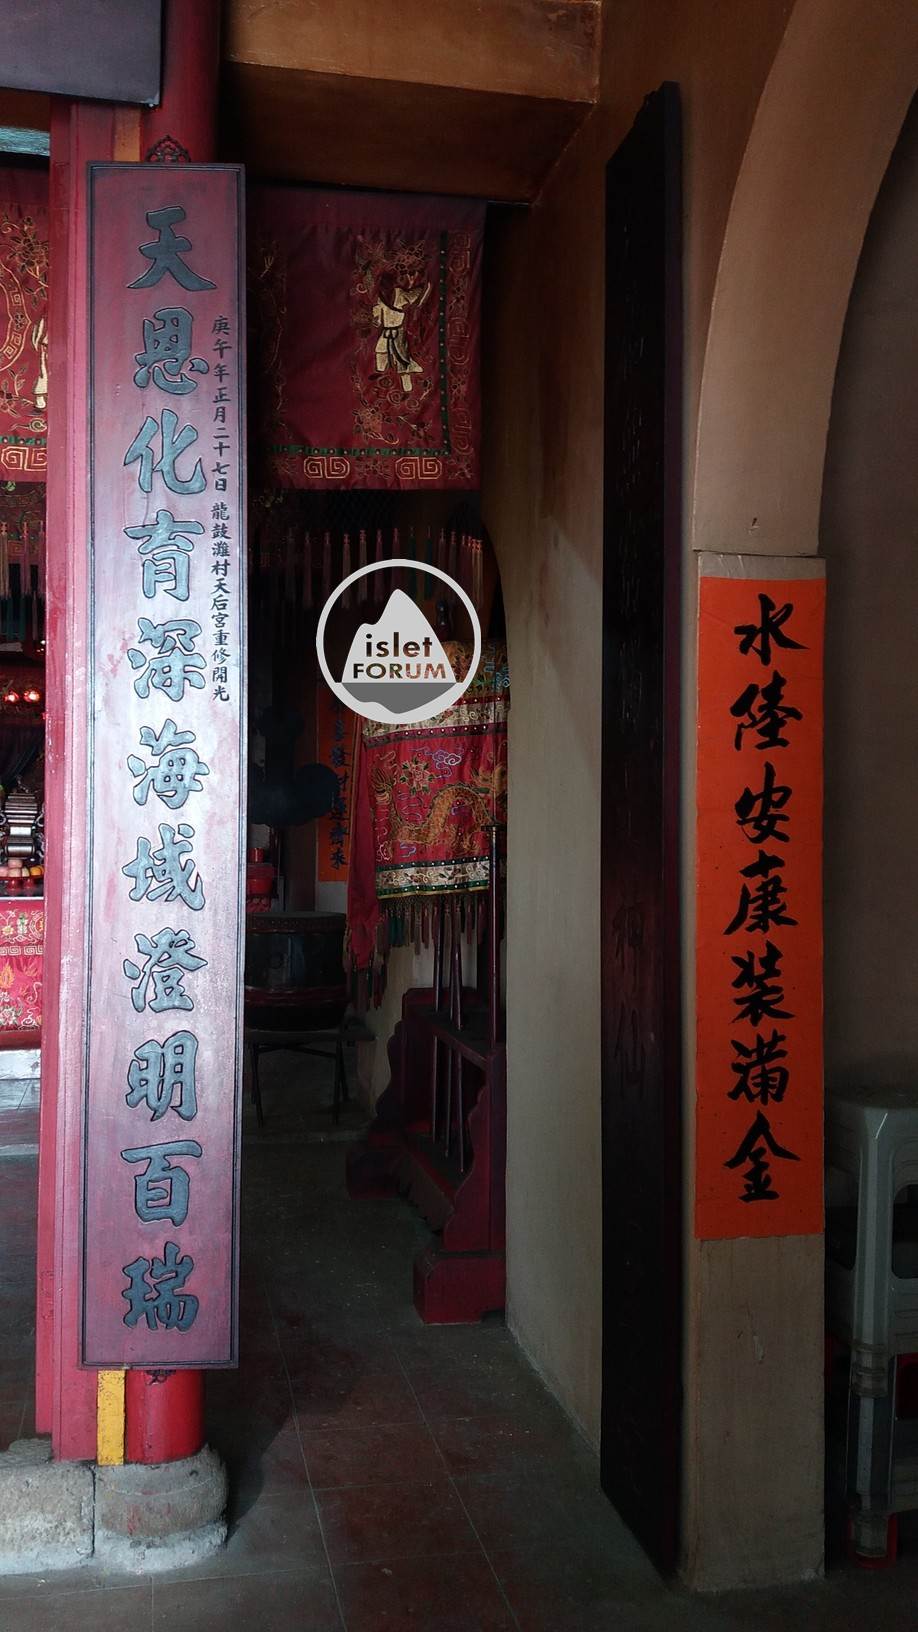 龍鼓灘天后廟lung kwu tan tin hau temple (6).jpg